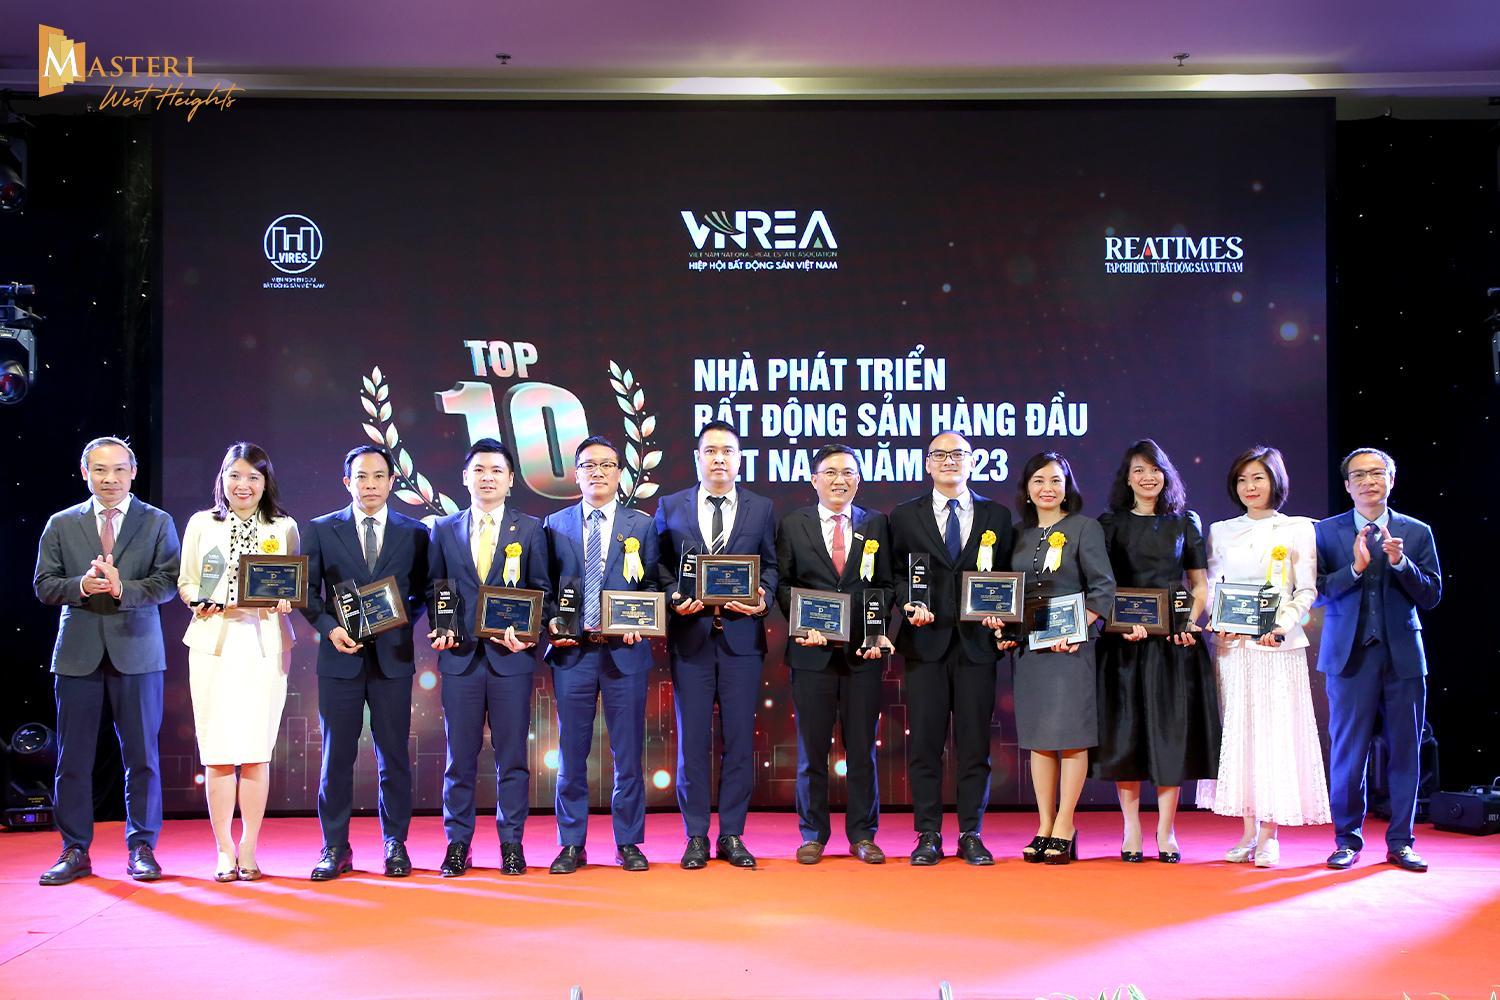 Masterise Homes: Top 10 nhà phát triển bất động sản hàng đầu Việt Nam 2023